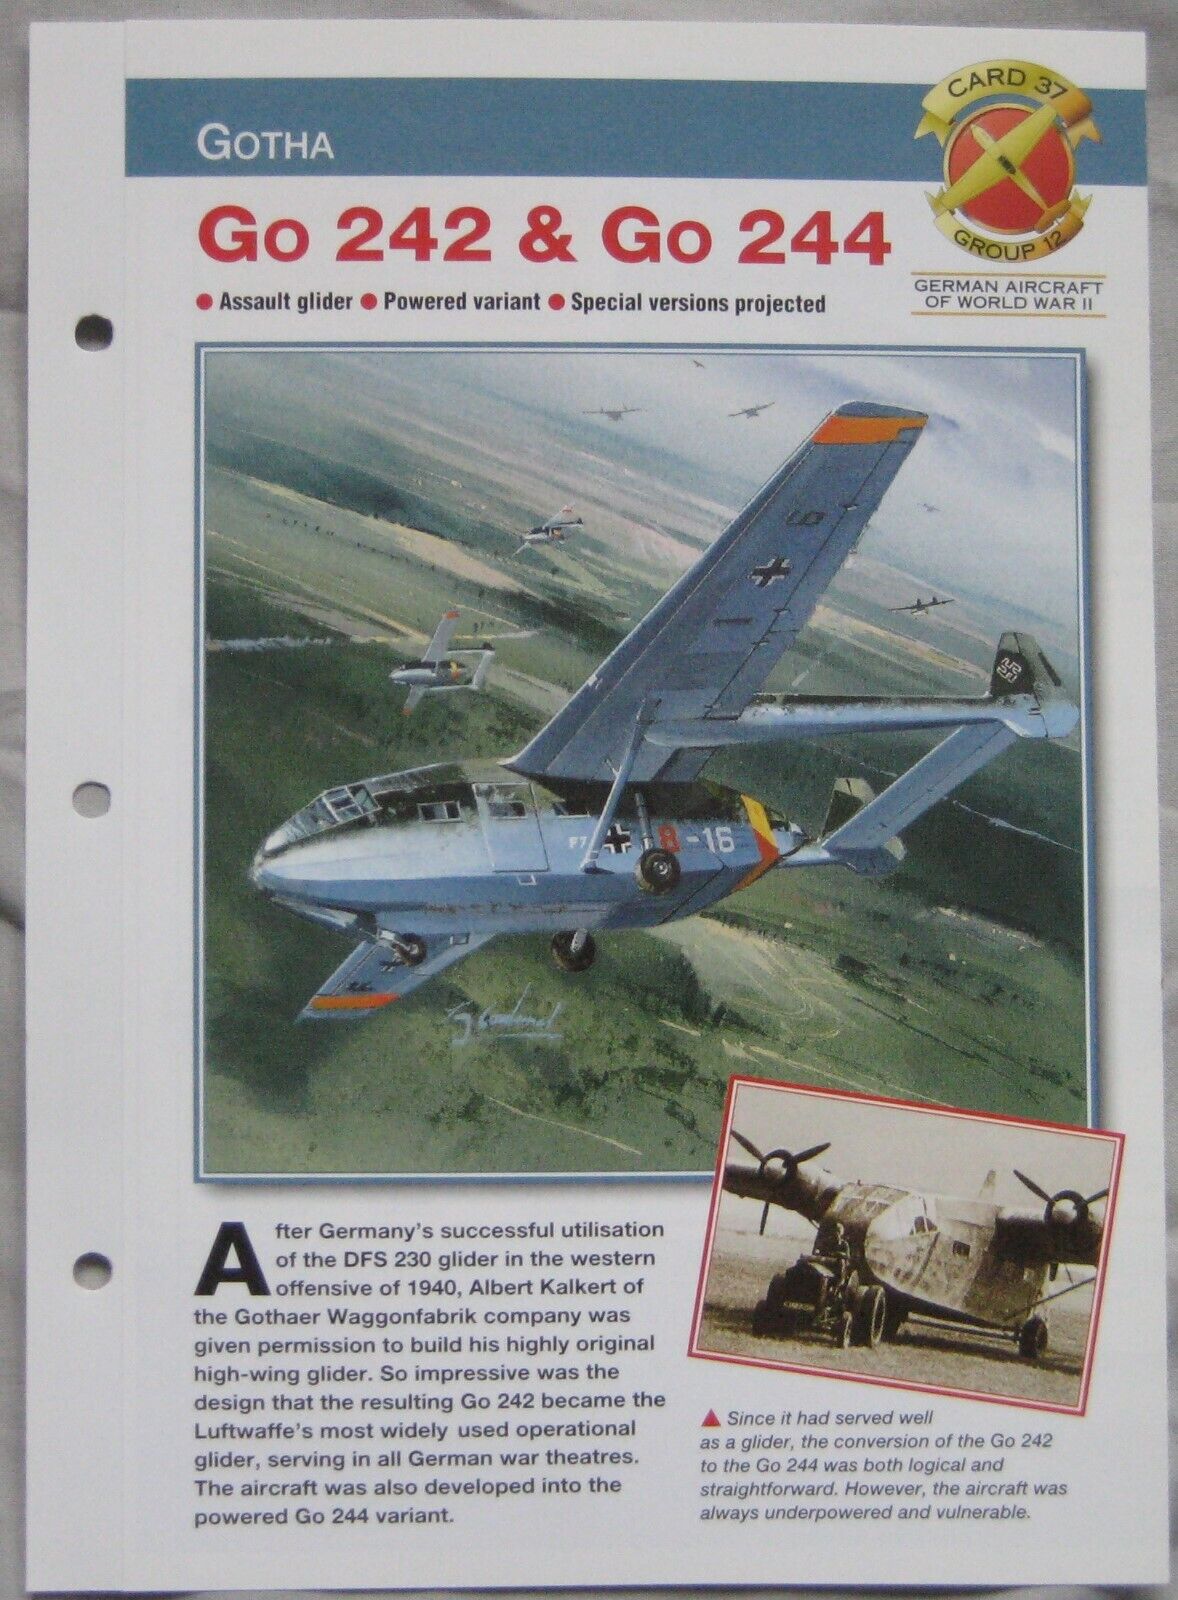 Aircraft of the World Card 37 , Group 12 - Gotha Go 242 & Go 244